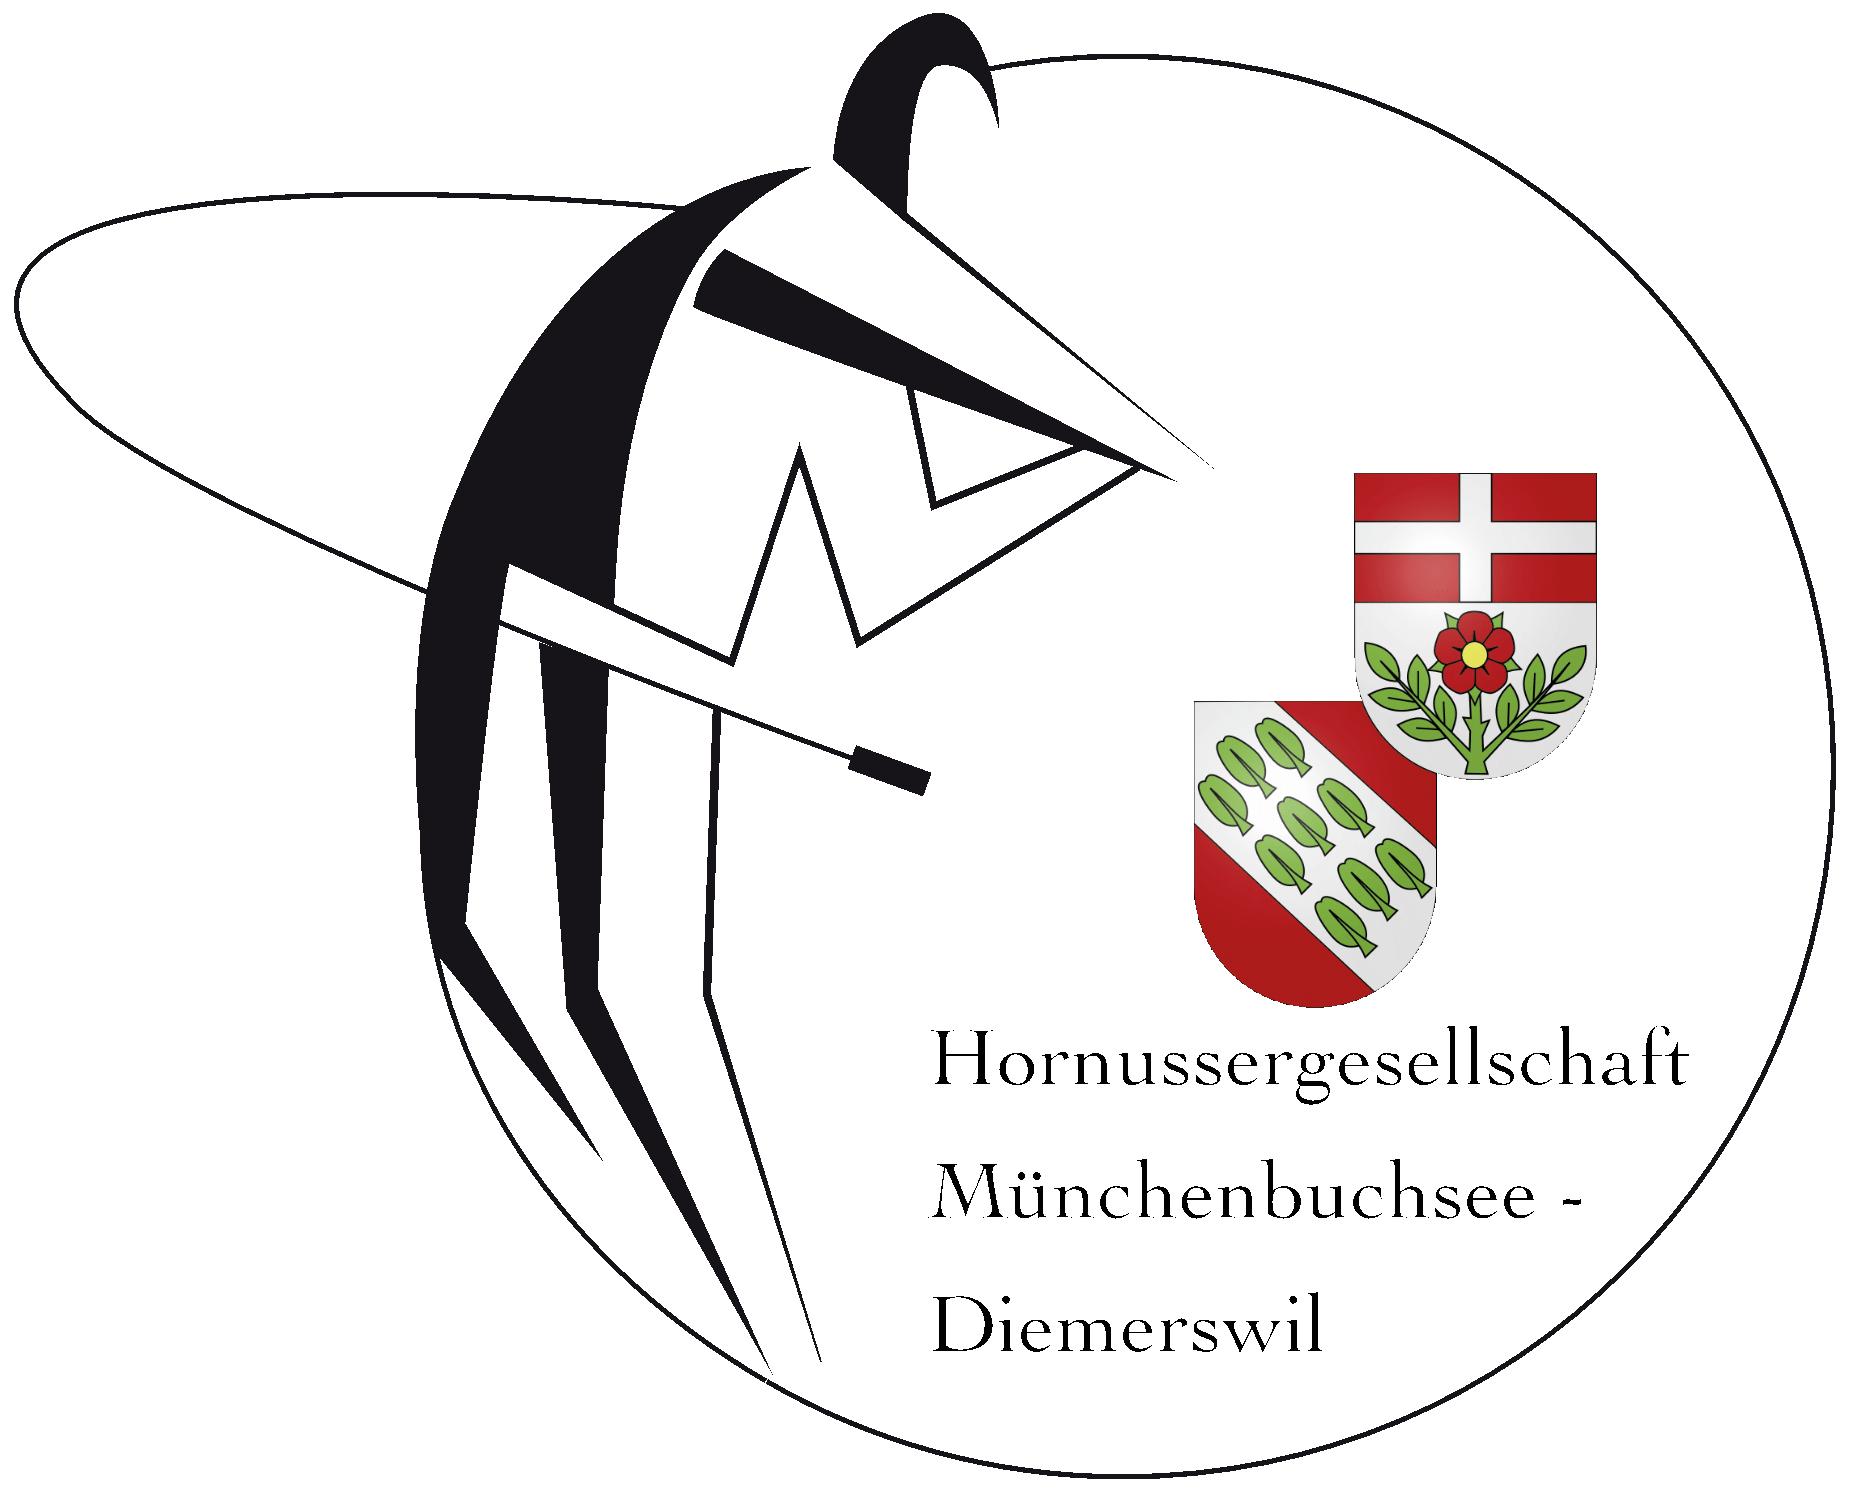 Hornussergesellschaft Münchenbuchsee-Diemerswil